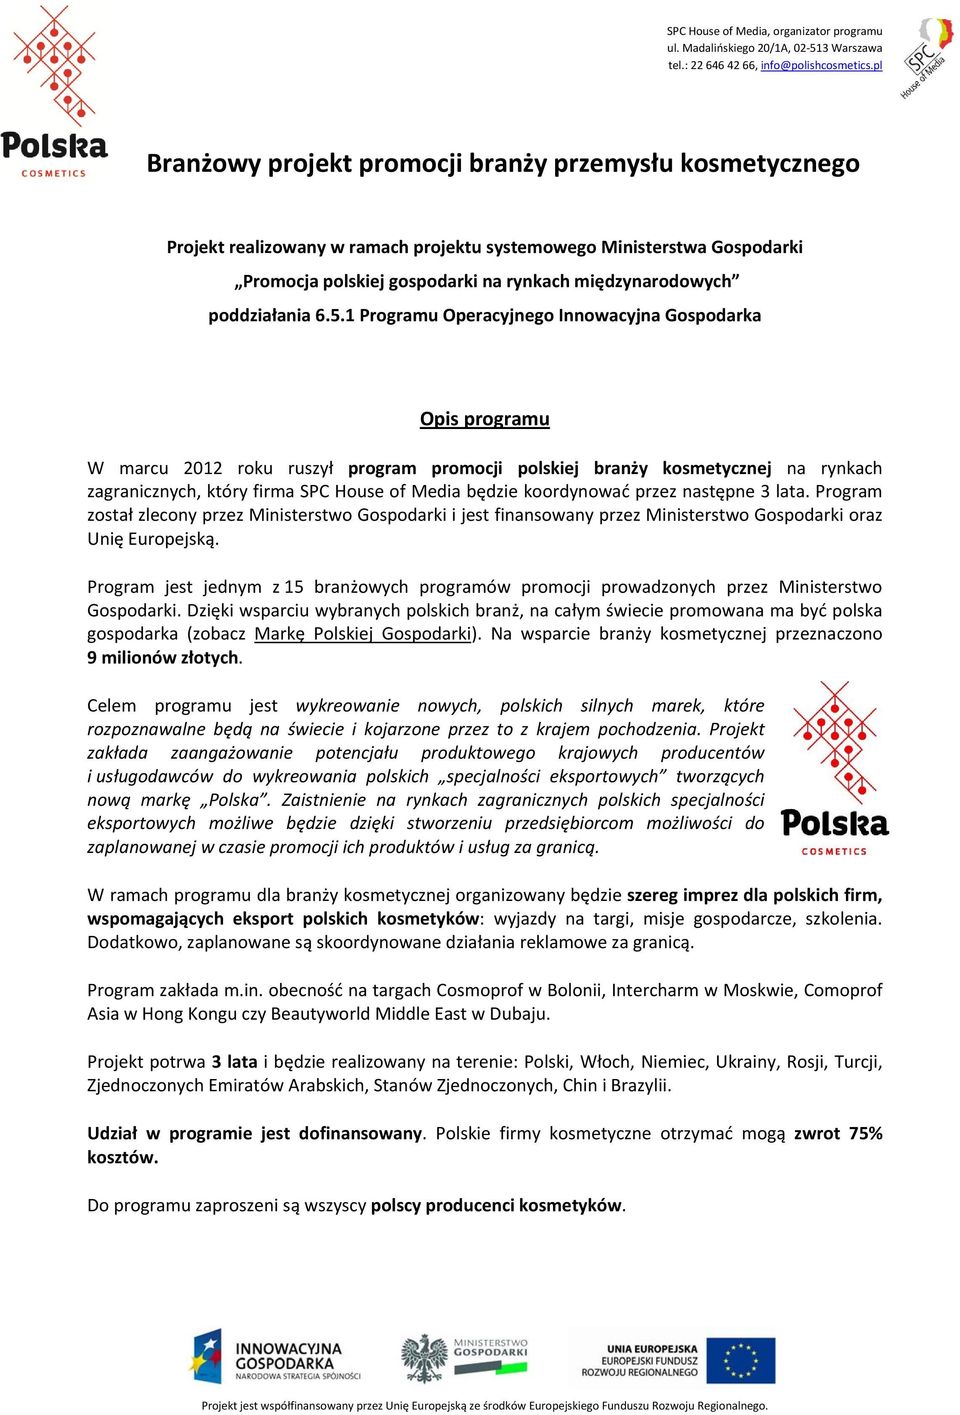 1 Programu Operacyjnego Innowacyjna Gospodarka Opis programu W marcu 2012 roku ruszył program promocji polskiej branży kosmetycznej na rynkach zagranicznych, który firma SPC House of Media będzie